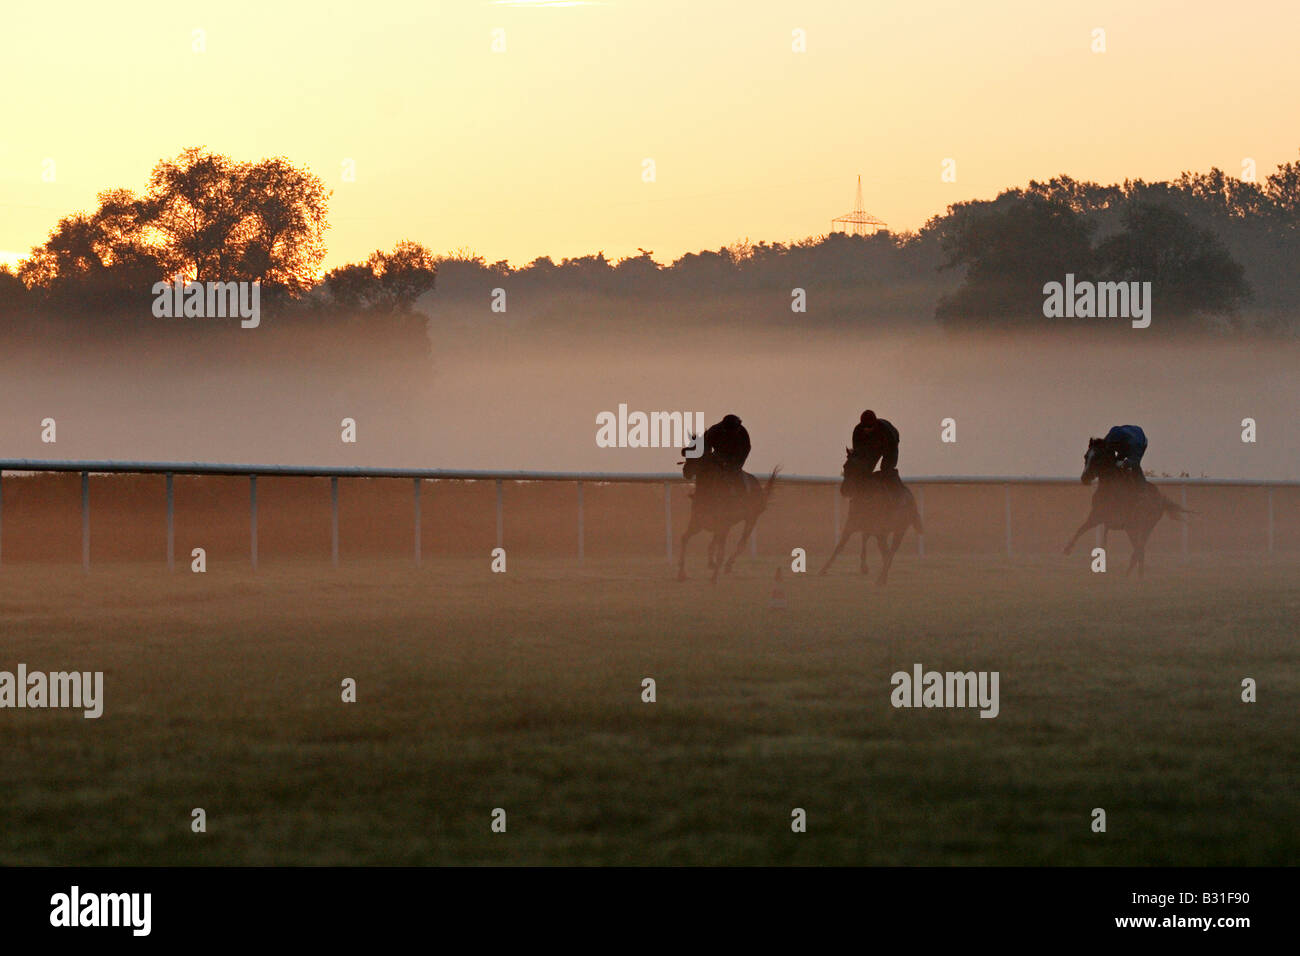 Cavaliers sur des chevaux dans la lumière du matin, Iffezheim, Allemagne Banque D'Images